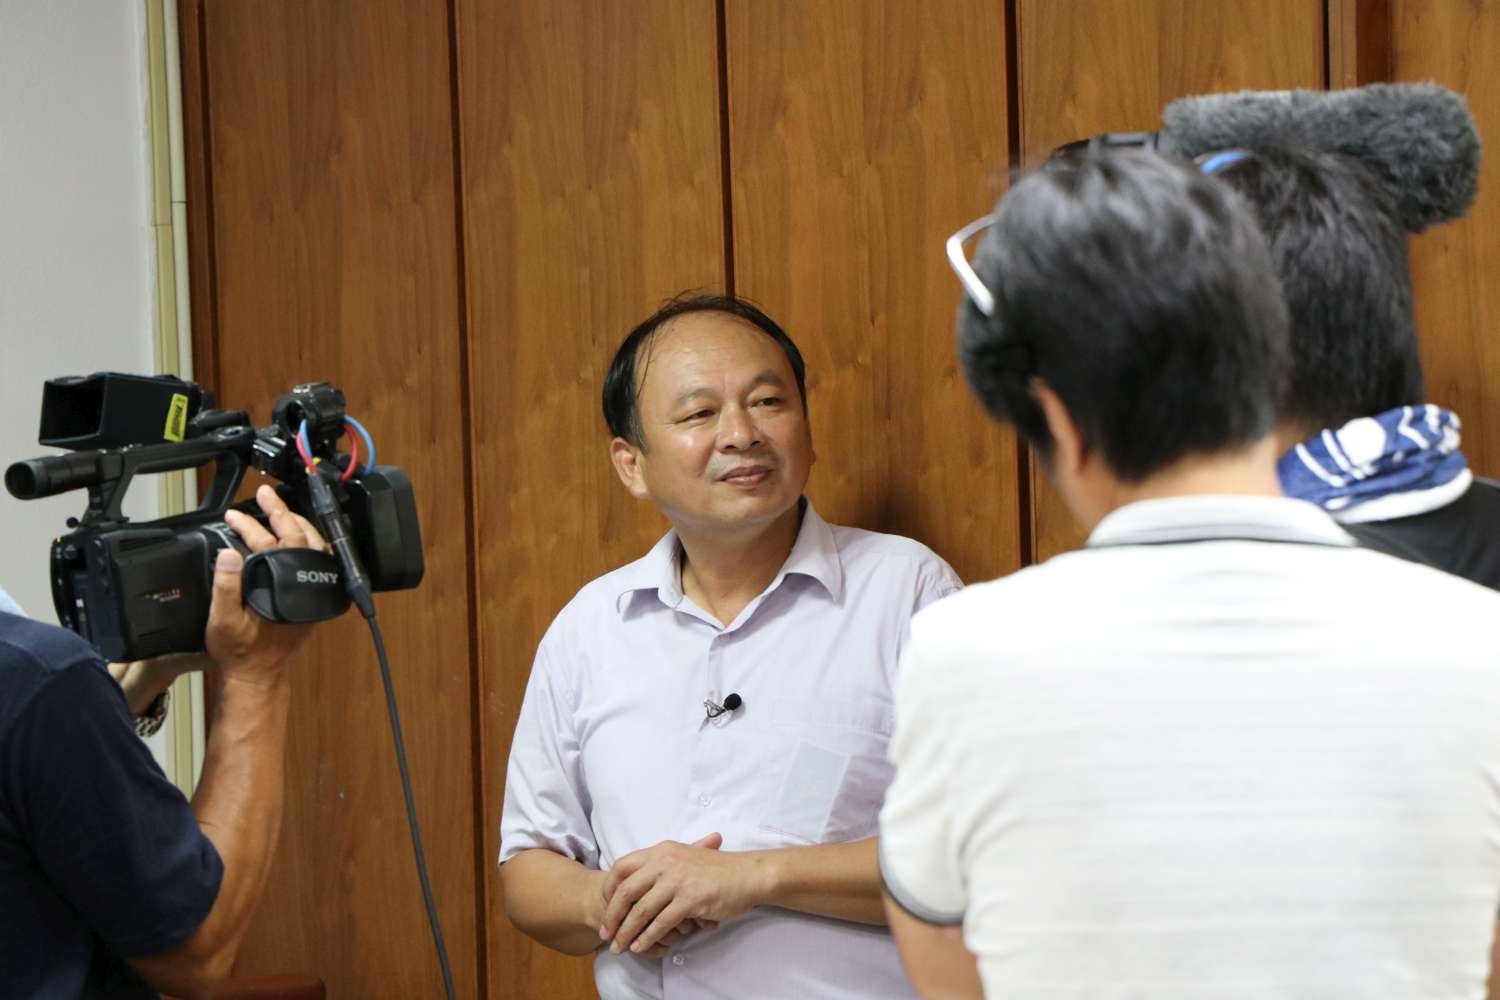 北門國小校長賴雲鵬接受日本電視台採訪。